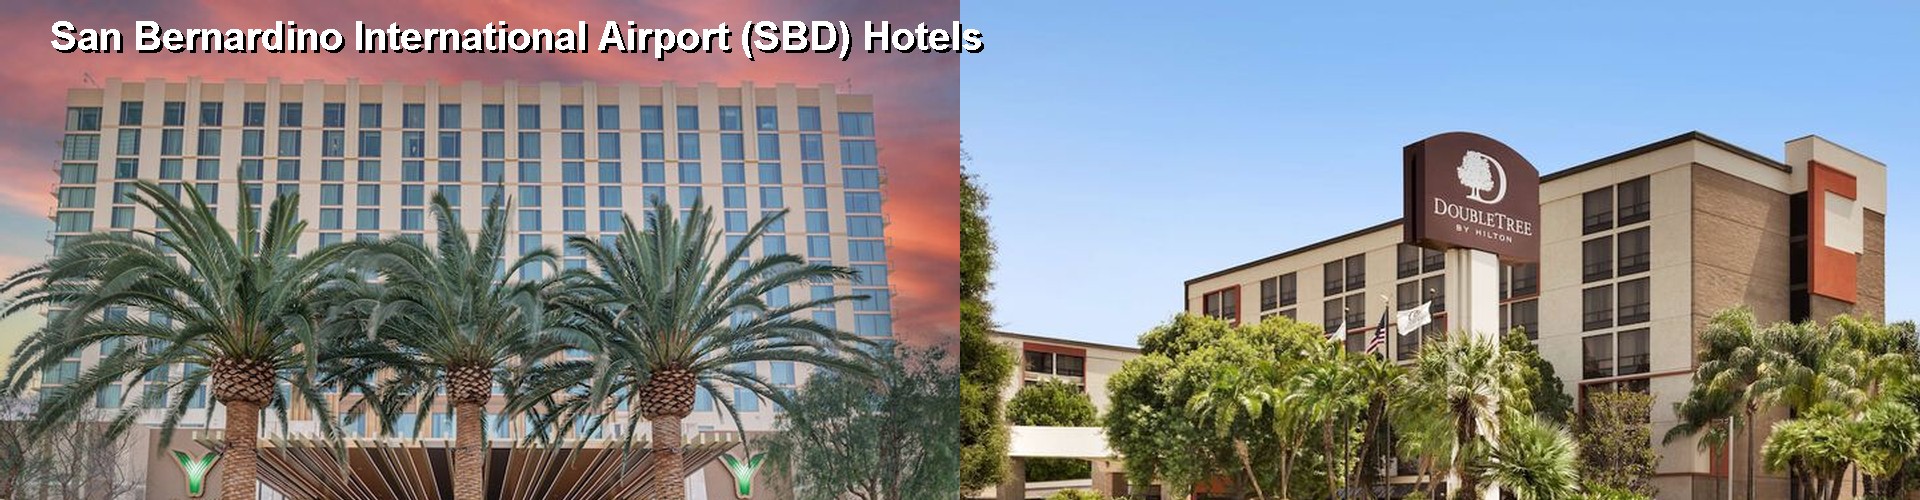 5 Best Hotels near San Bernardino International Airport (SBD)